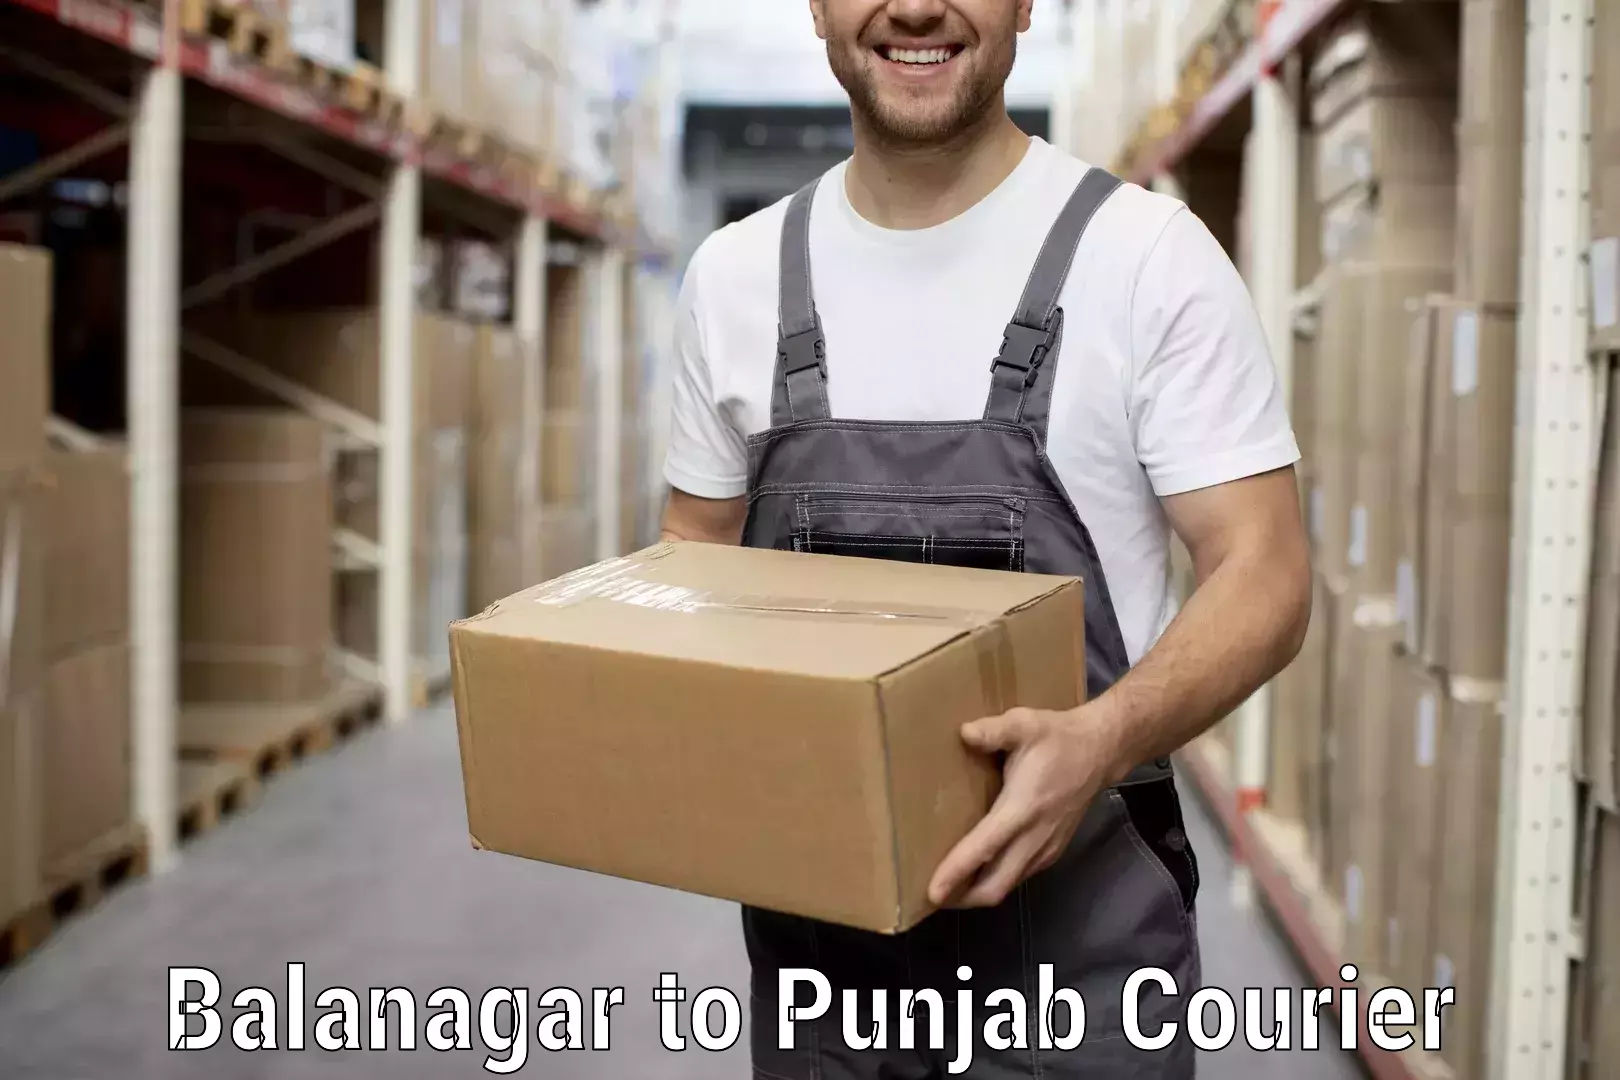 Furniture transport services Balanagar to Mandi Gobindgarh